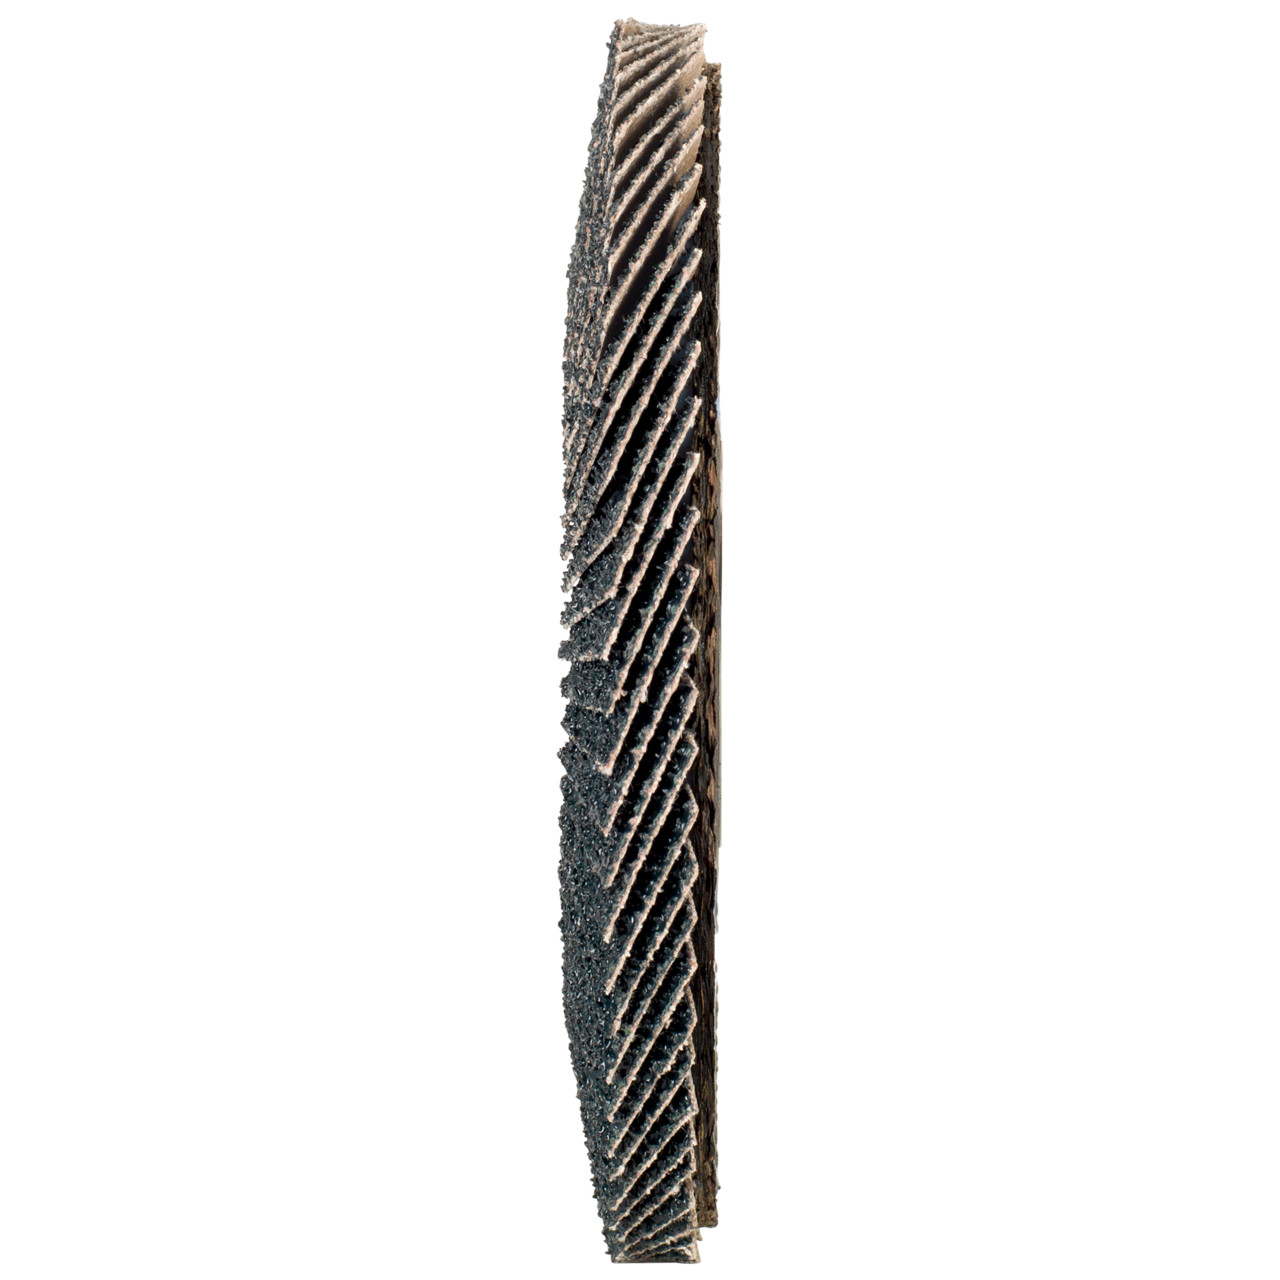 Tyrolit Arandela dentada DxH 150x22,2 2en1 para acero y acero inoxidable, P120, forma: 27A - versión con manivela (versión con cuerpo de soporte de fibra de vidrio), Art. 519215